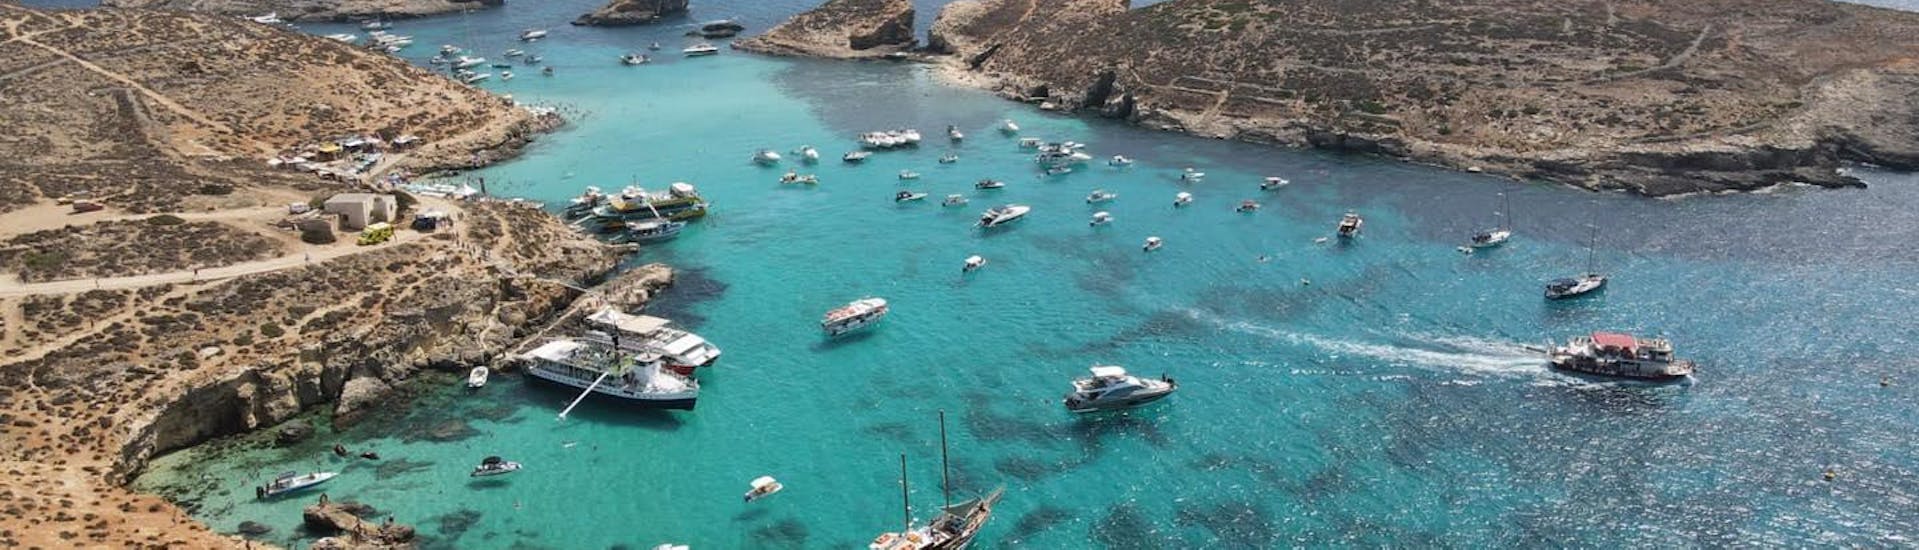 La costa di Malta dove Luzzu Cruises organizza escursioni in barca.